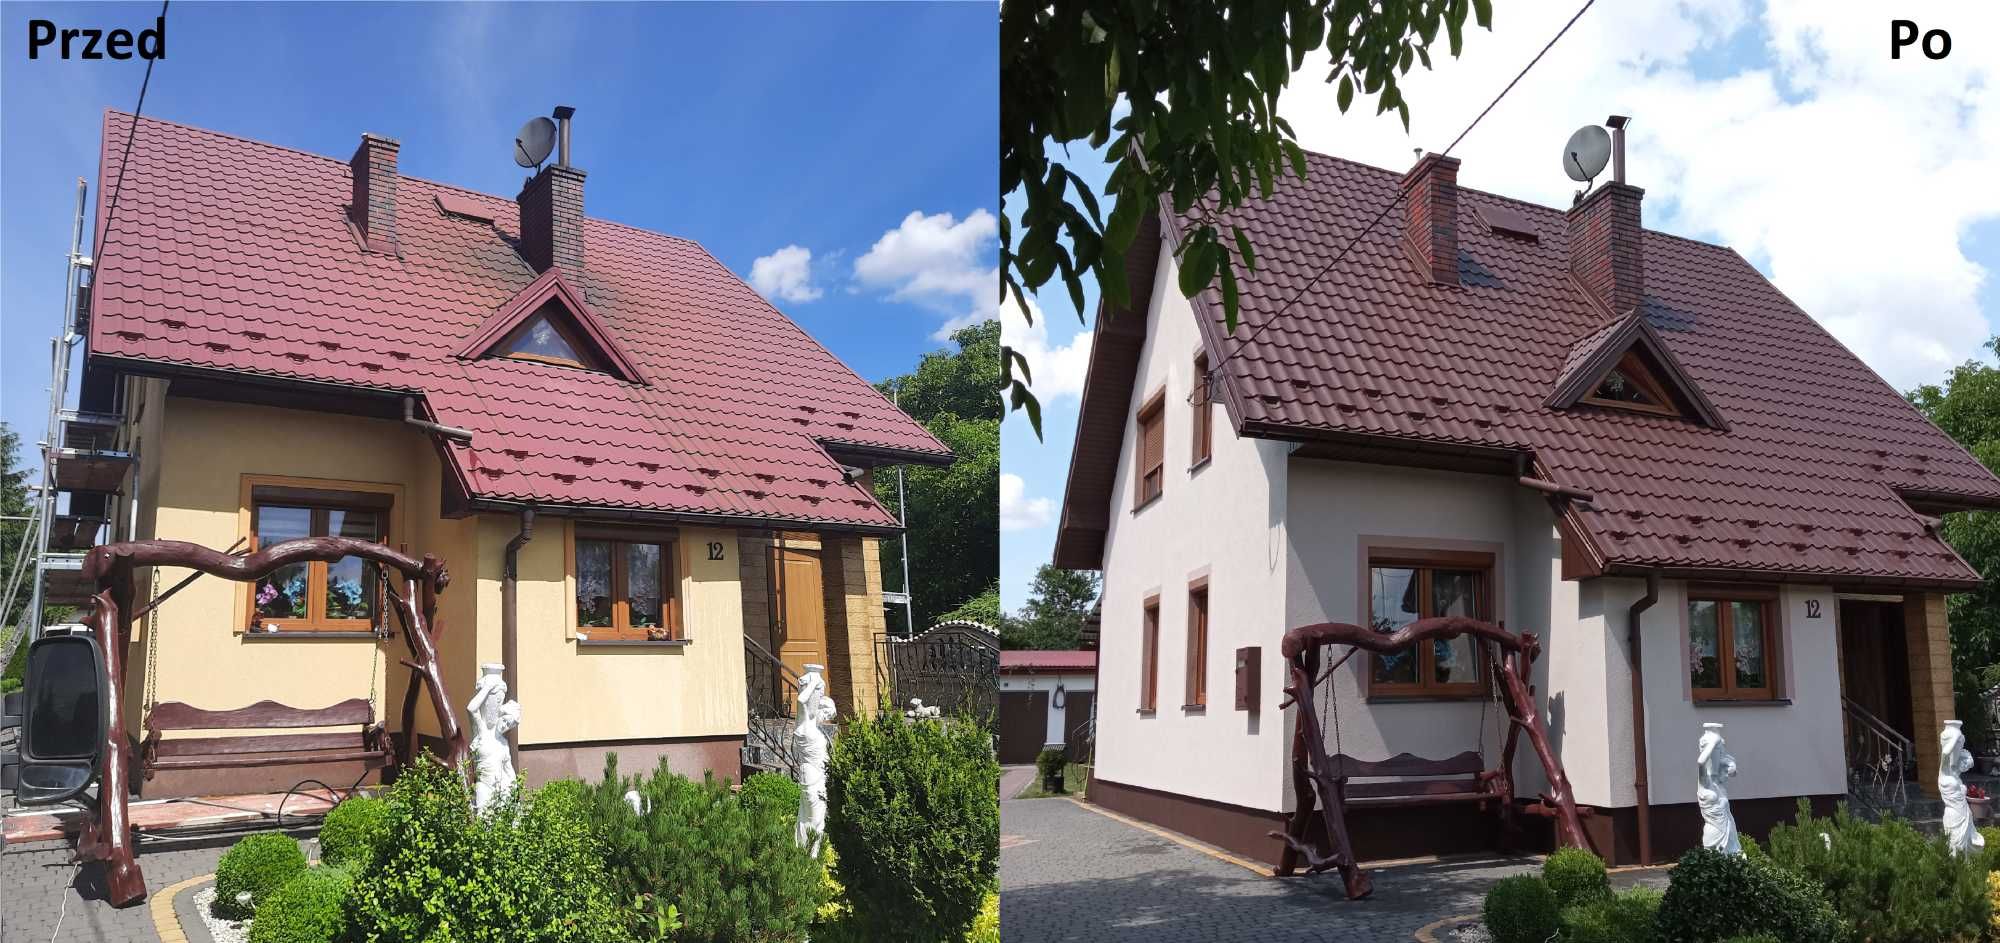 Malowanie Dachów /Malowanie Elewacji /Mycie Dachów